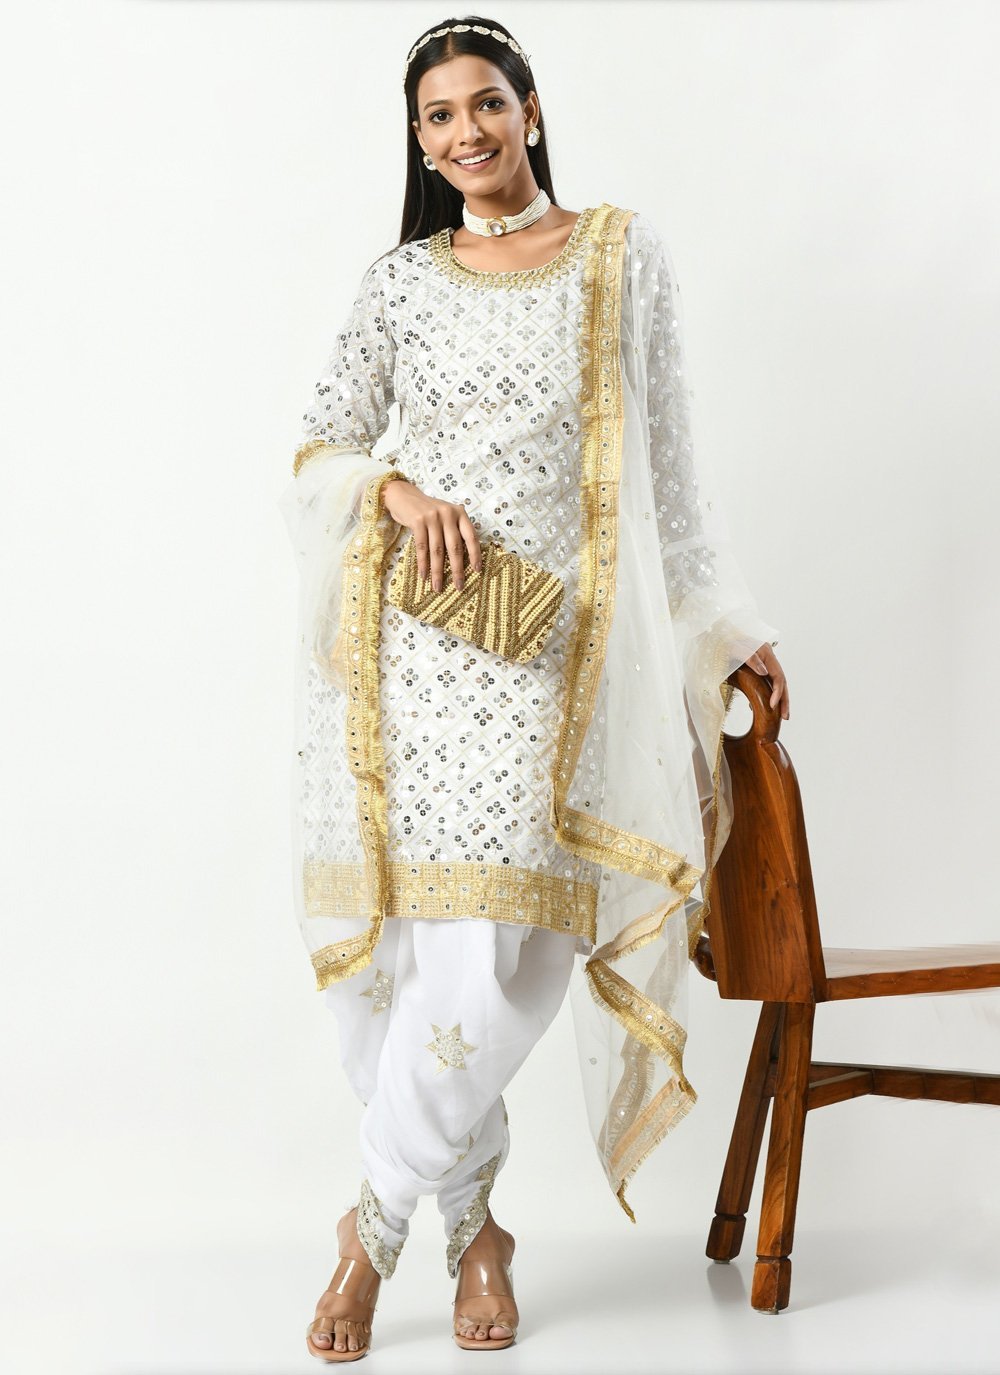 Designer Salwar kameez | Designer Punjab Suits | Pakistani Salwar Kameez |  Salwar kameez designs, Pakistani salwar kameez, Salwar kameez